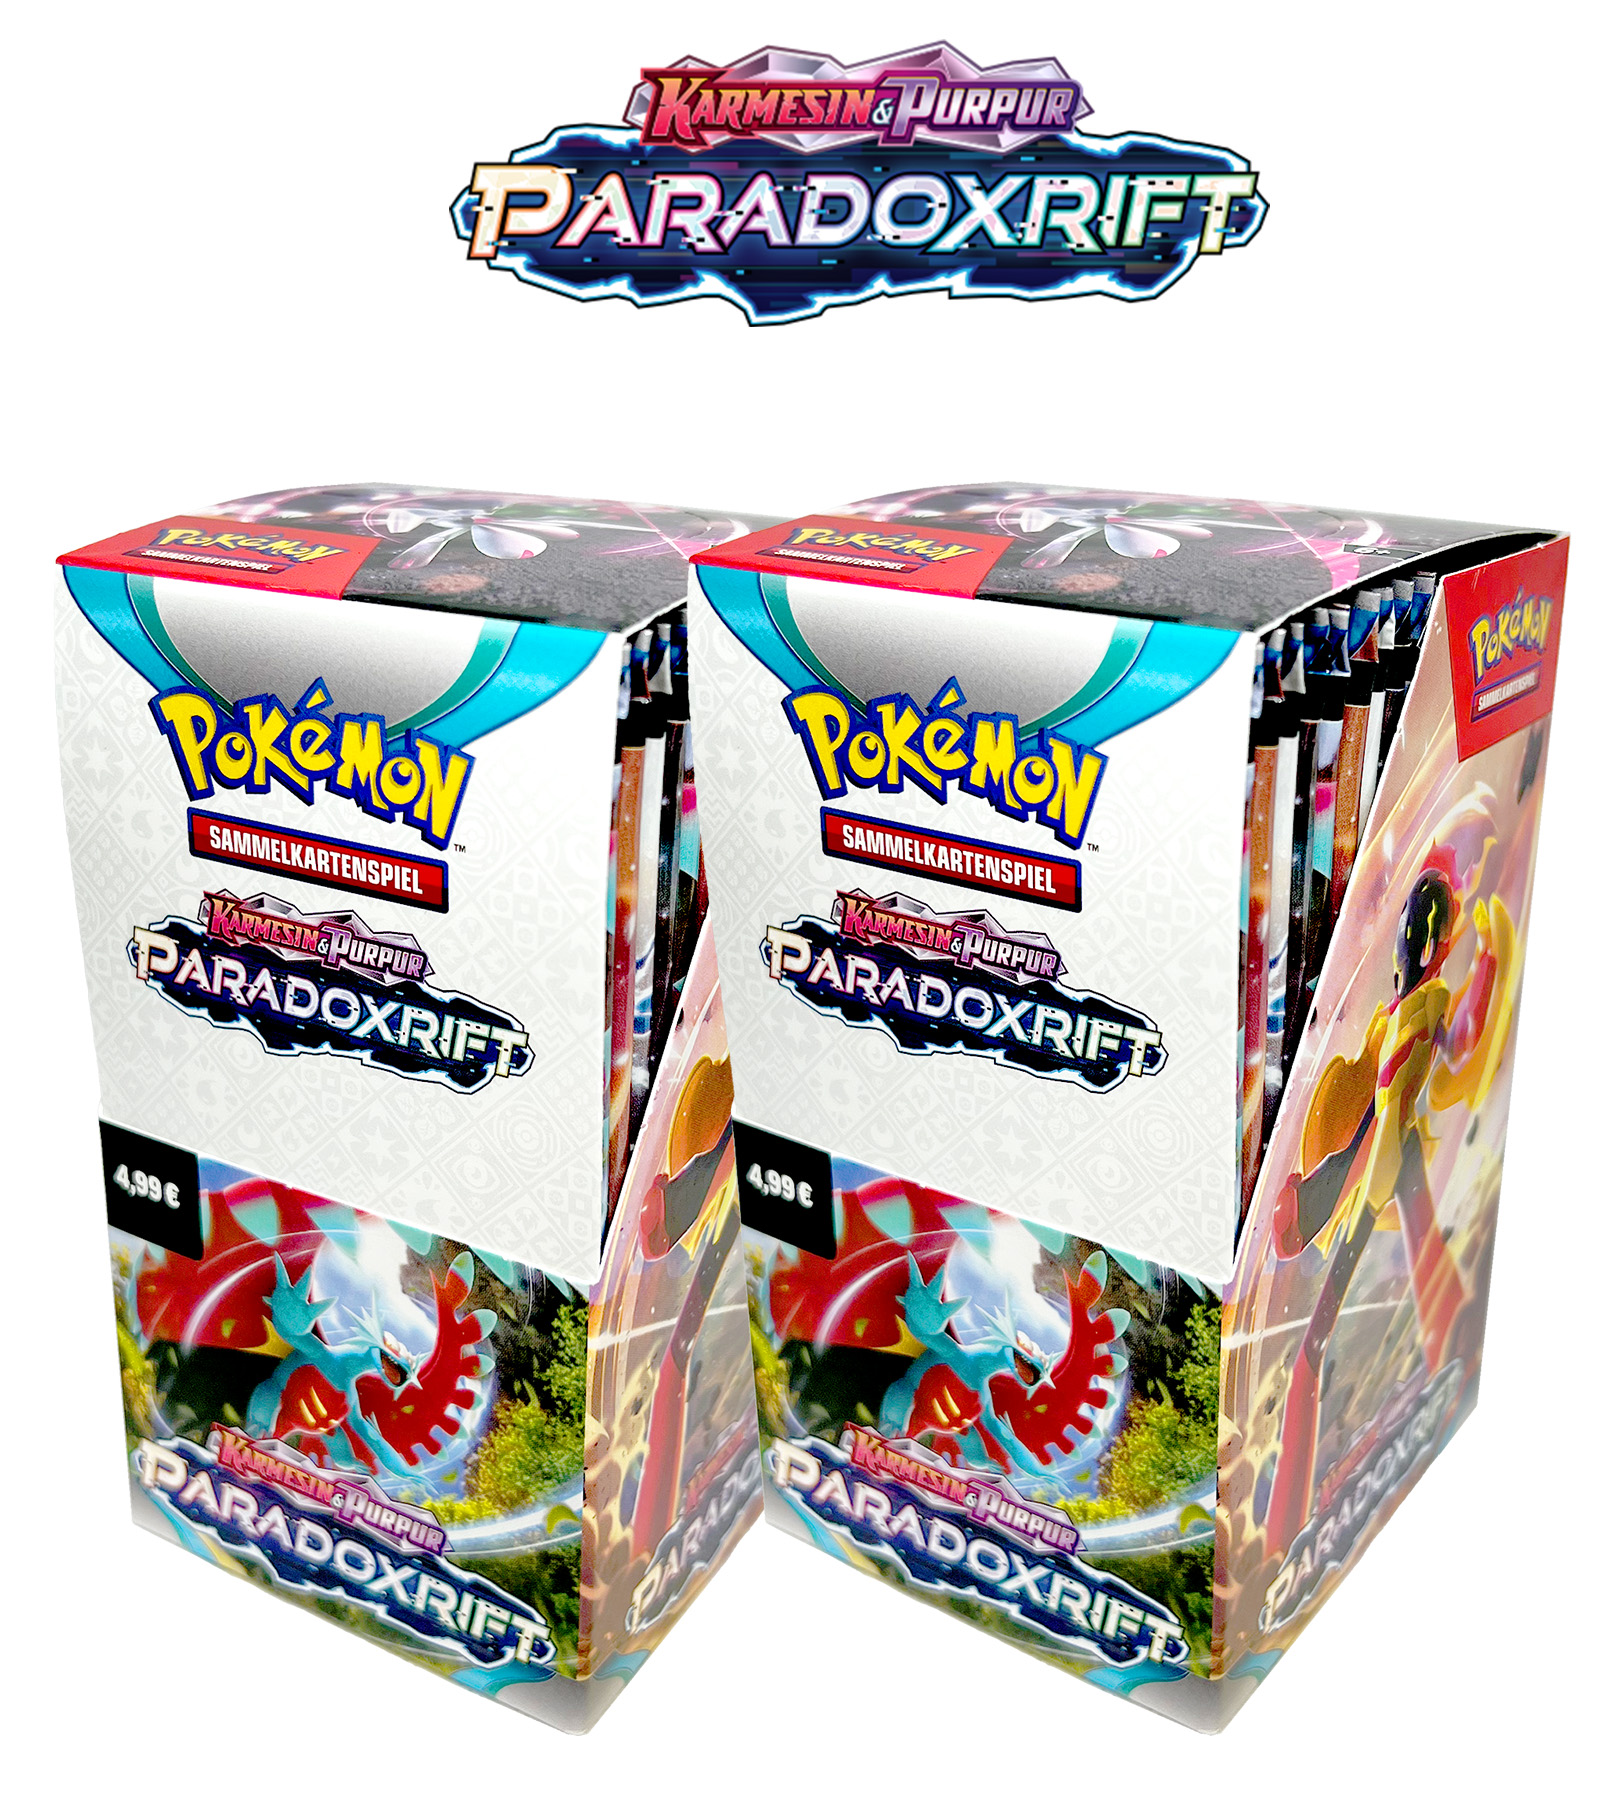 Pokémon Double Bundle "Paradoxrift" - 2 Displays mit je 18 Boosterpacks